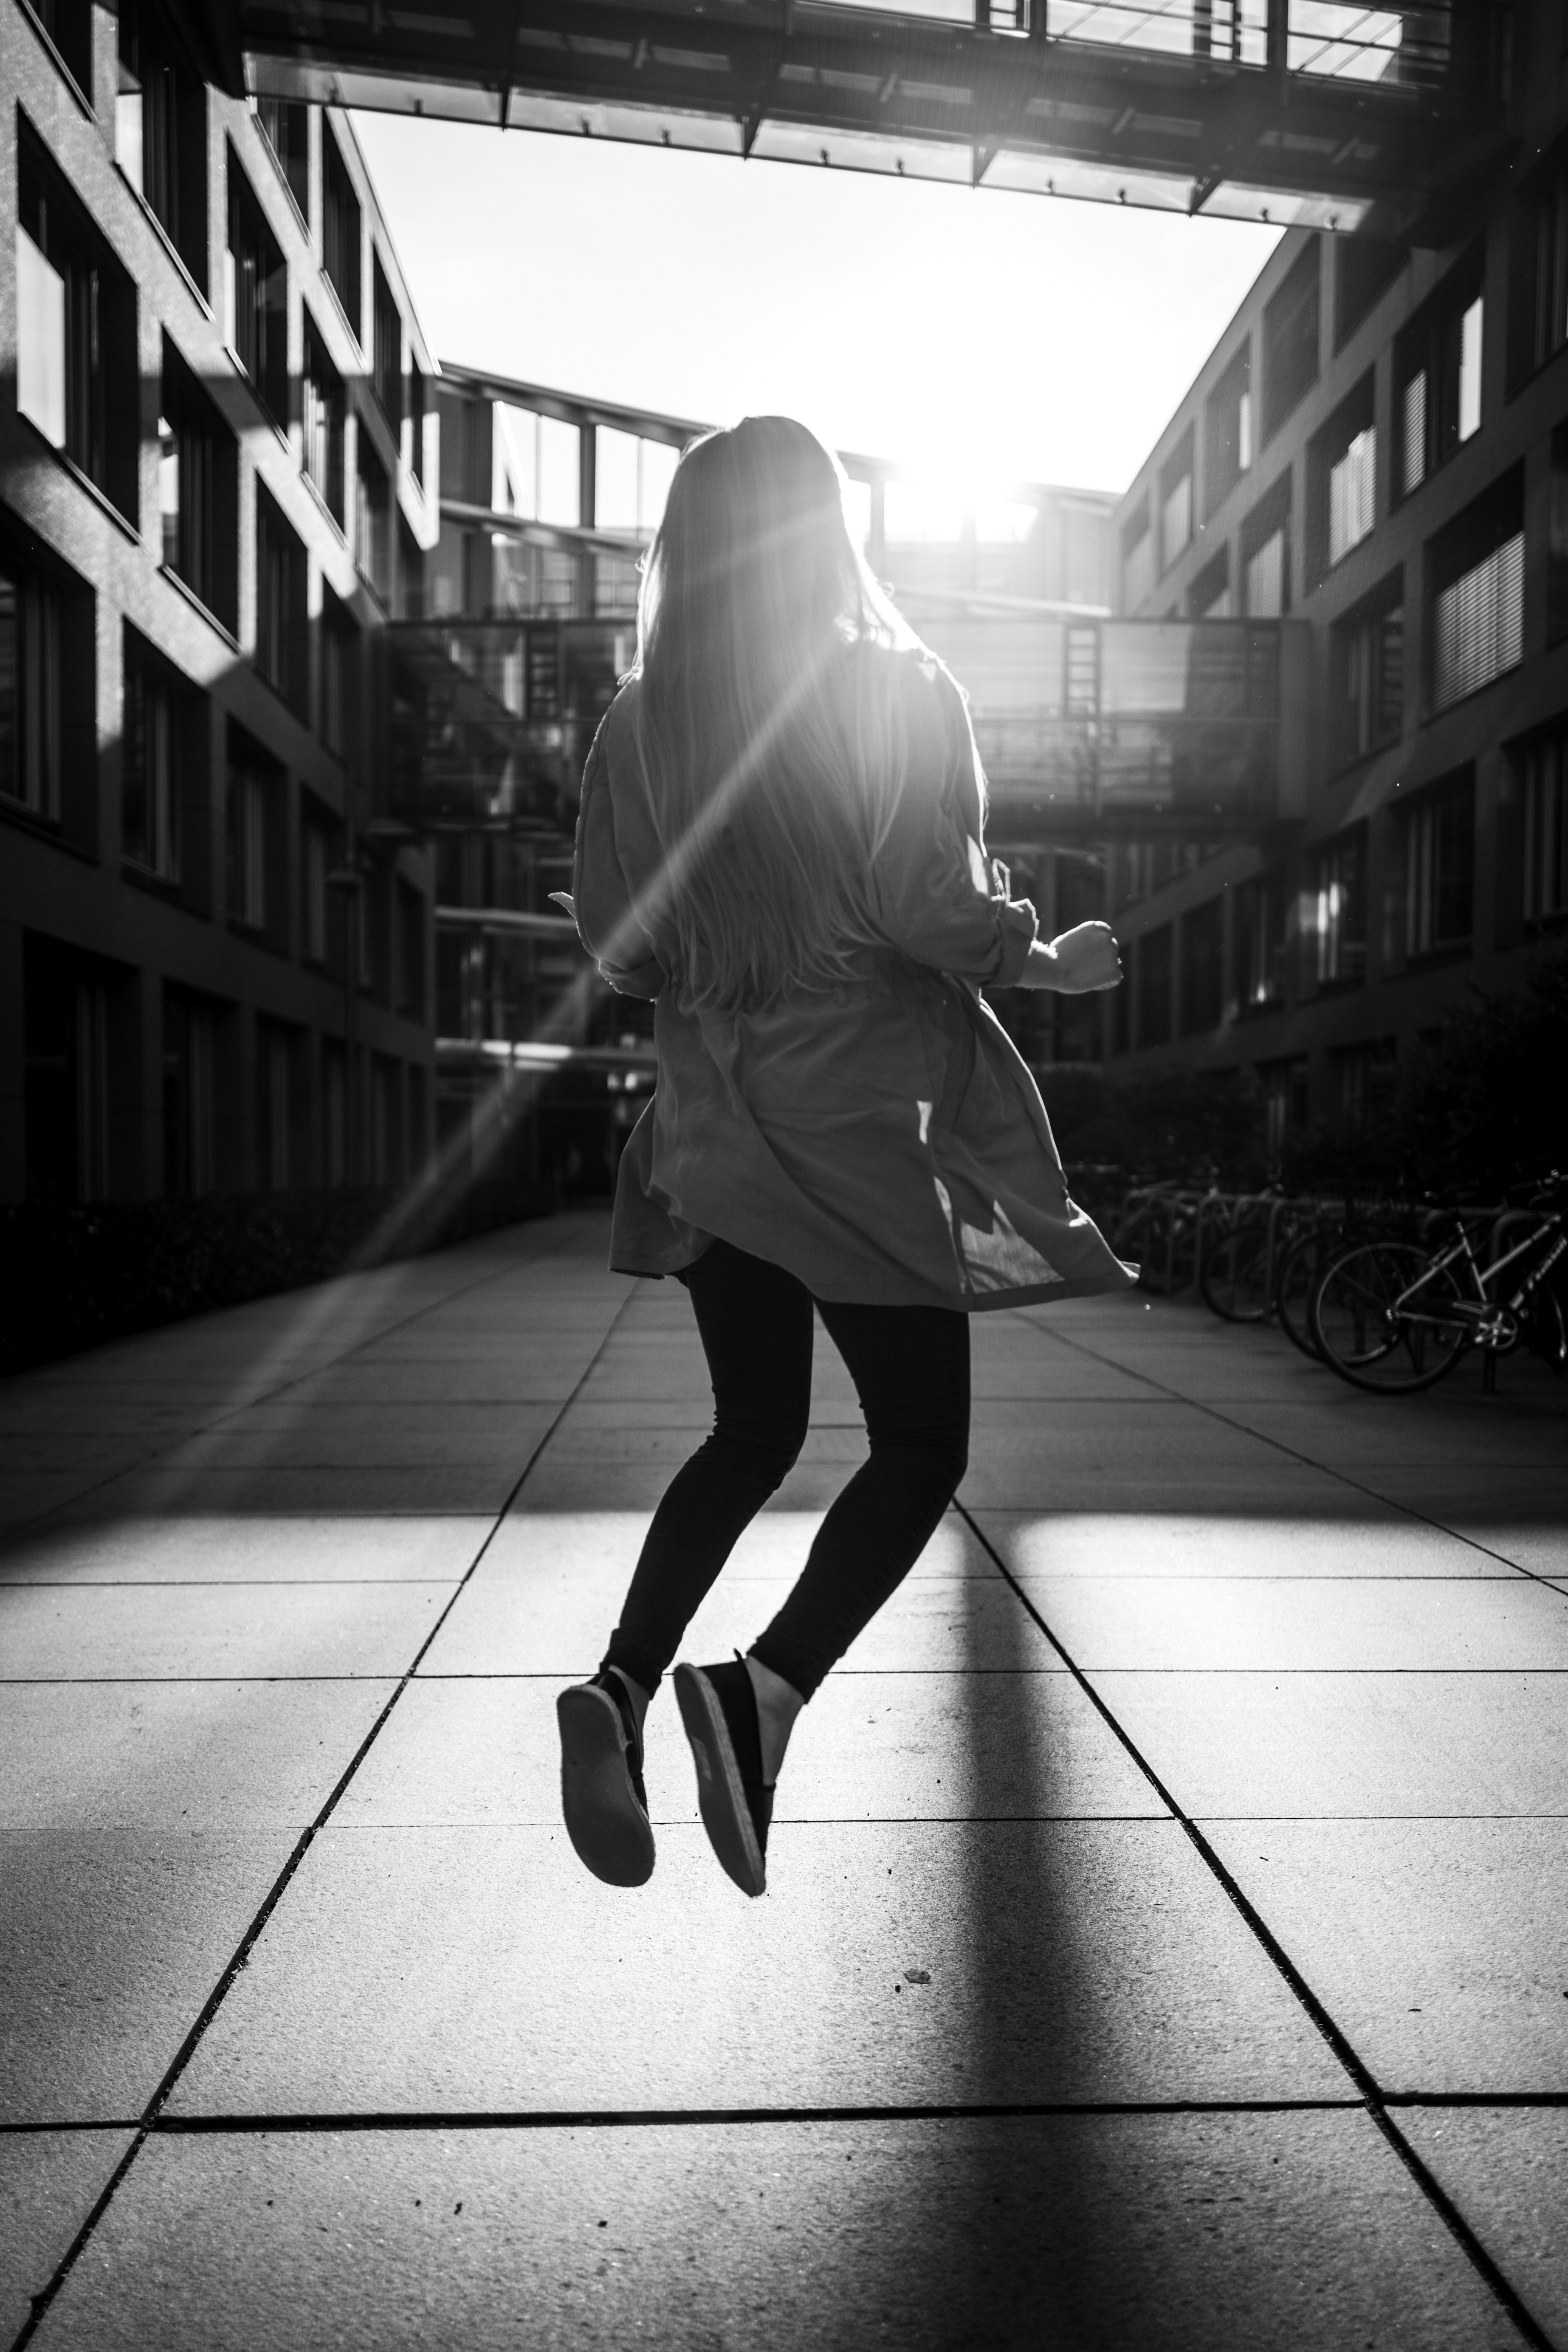 Das Bild zeigt eine schwarz-weiße Fotografie. In der Aufnahme springt eine Person zwischen Schatten und Licht. Die Umgebung ist urban, mit modernen Gebäuden auf beiden Seiten und einem Gehweg in der Mitte. Sonnenlicht durchflutet die Gebäude und erzeugt kontrastierende Schatten auf dem  Boden.